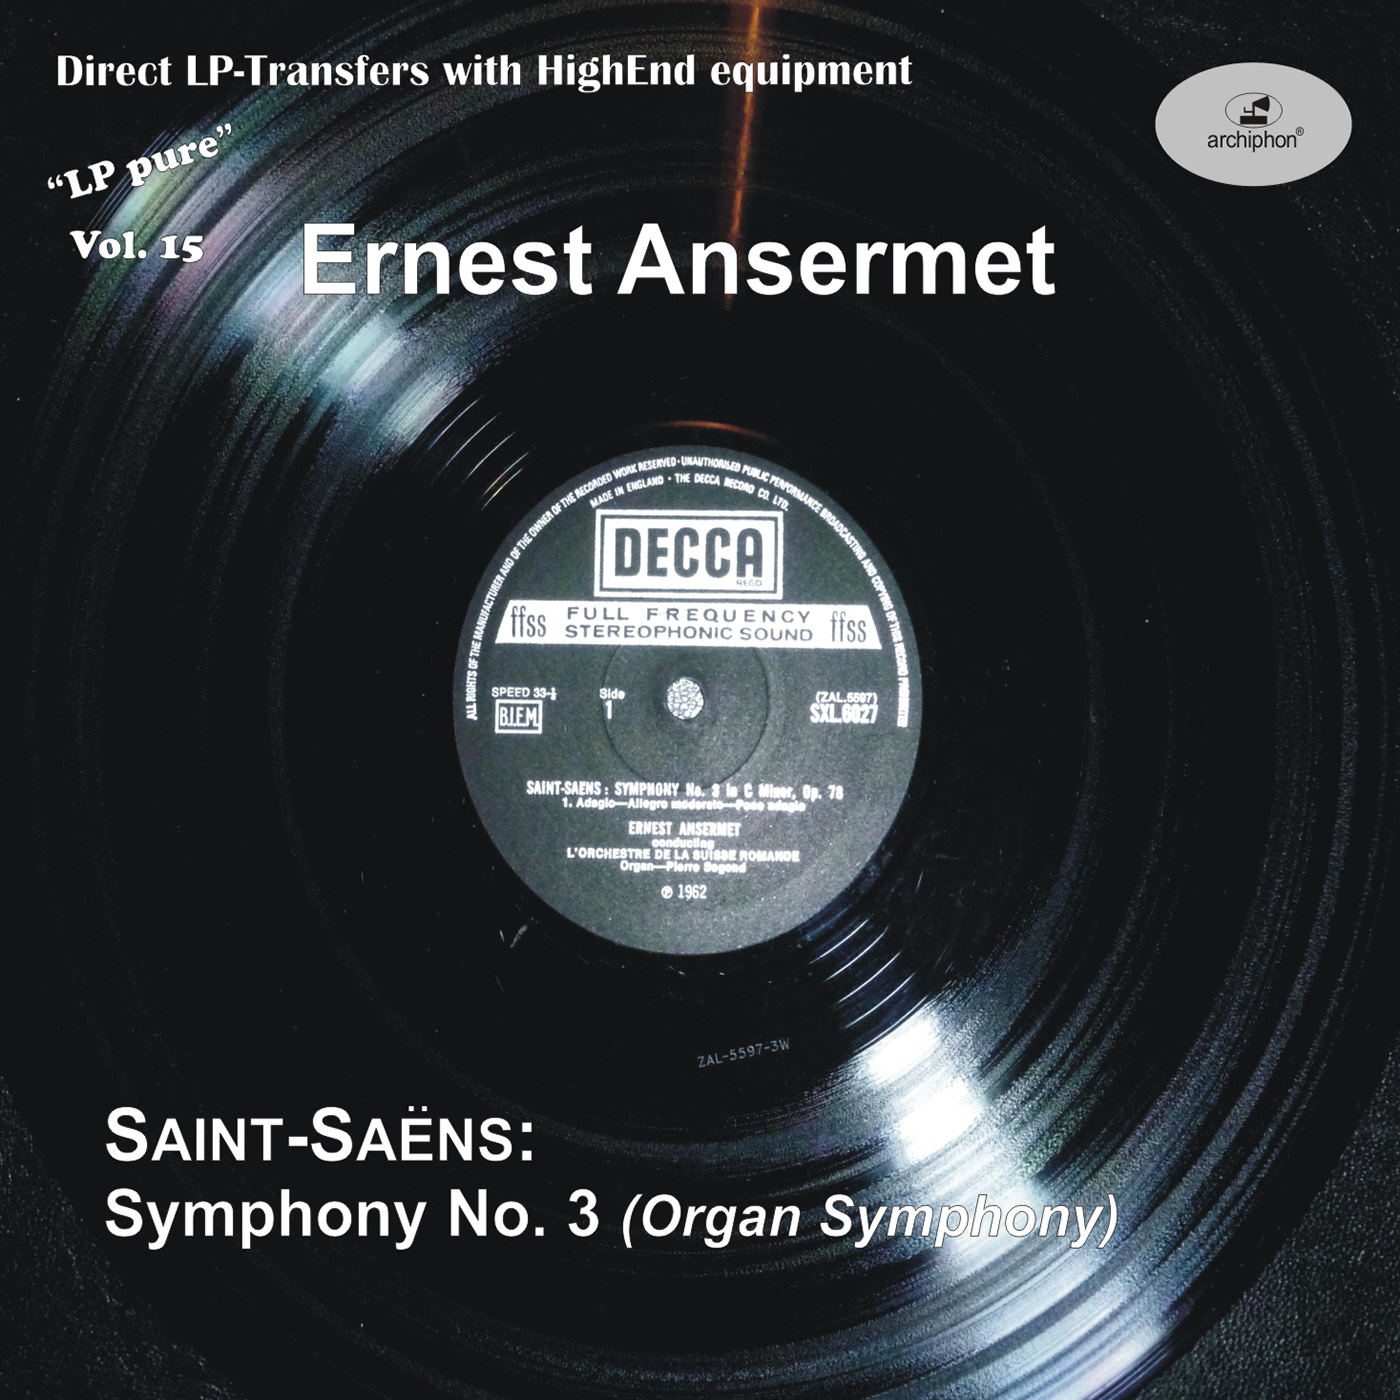 SAINTSA NS, C.: Symphony No. 3, " Organ"  LP Pure, Vol. 15 Segon, Swiss Romande Orchestra, Ansermet 1962